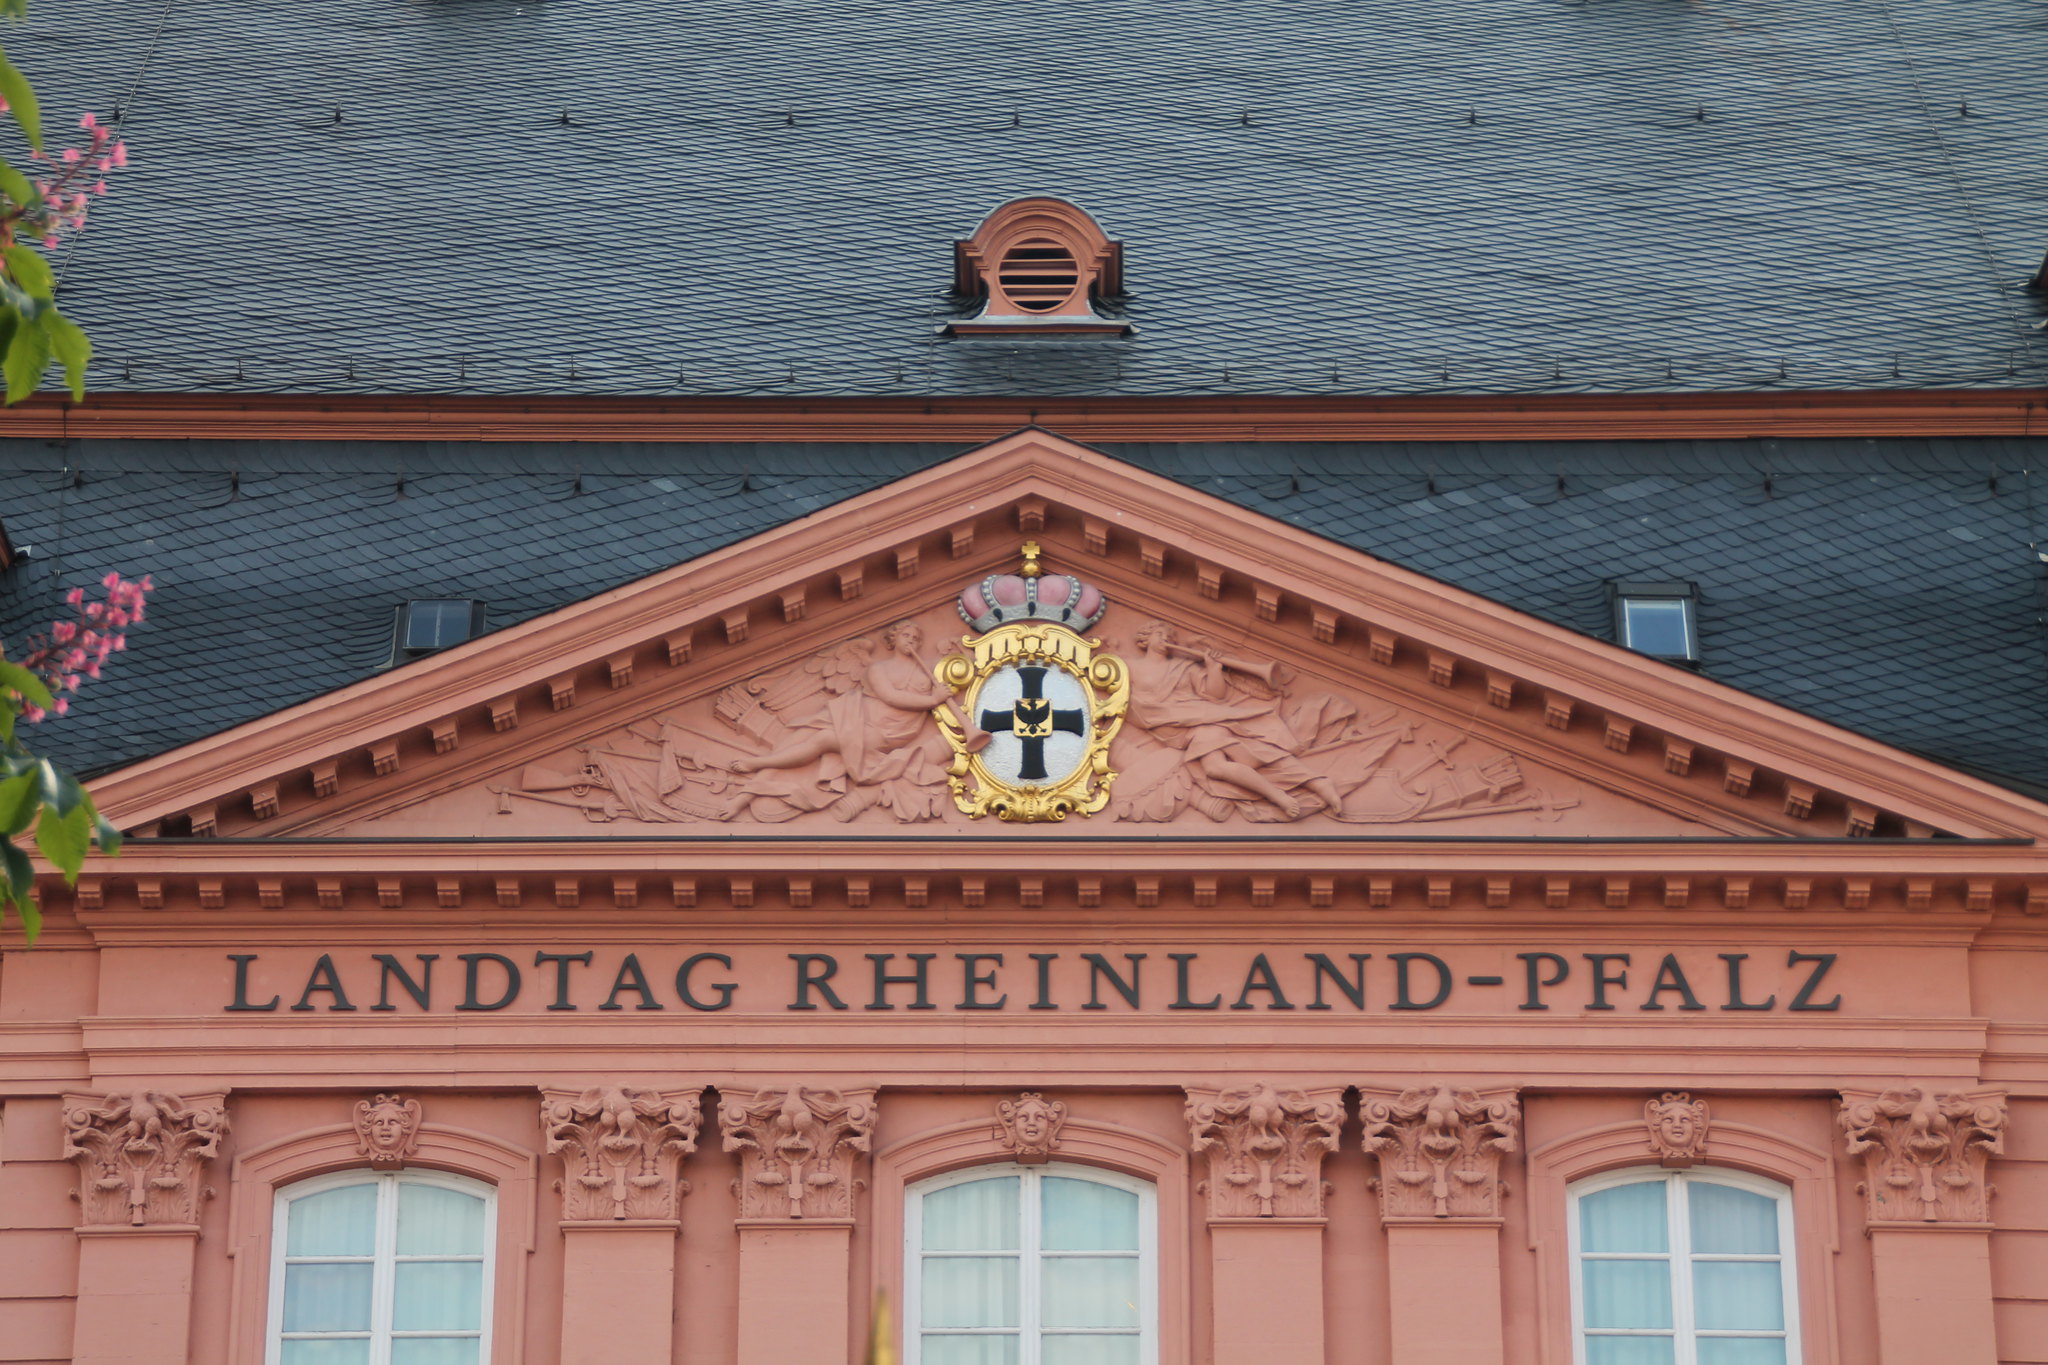 Landtag Rheinland-Pfalz|Spielautomaten